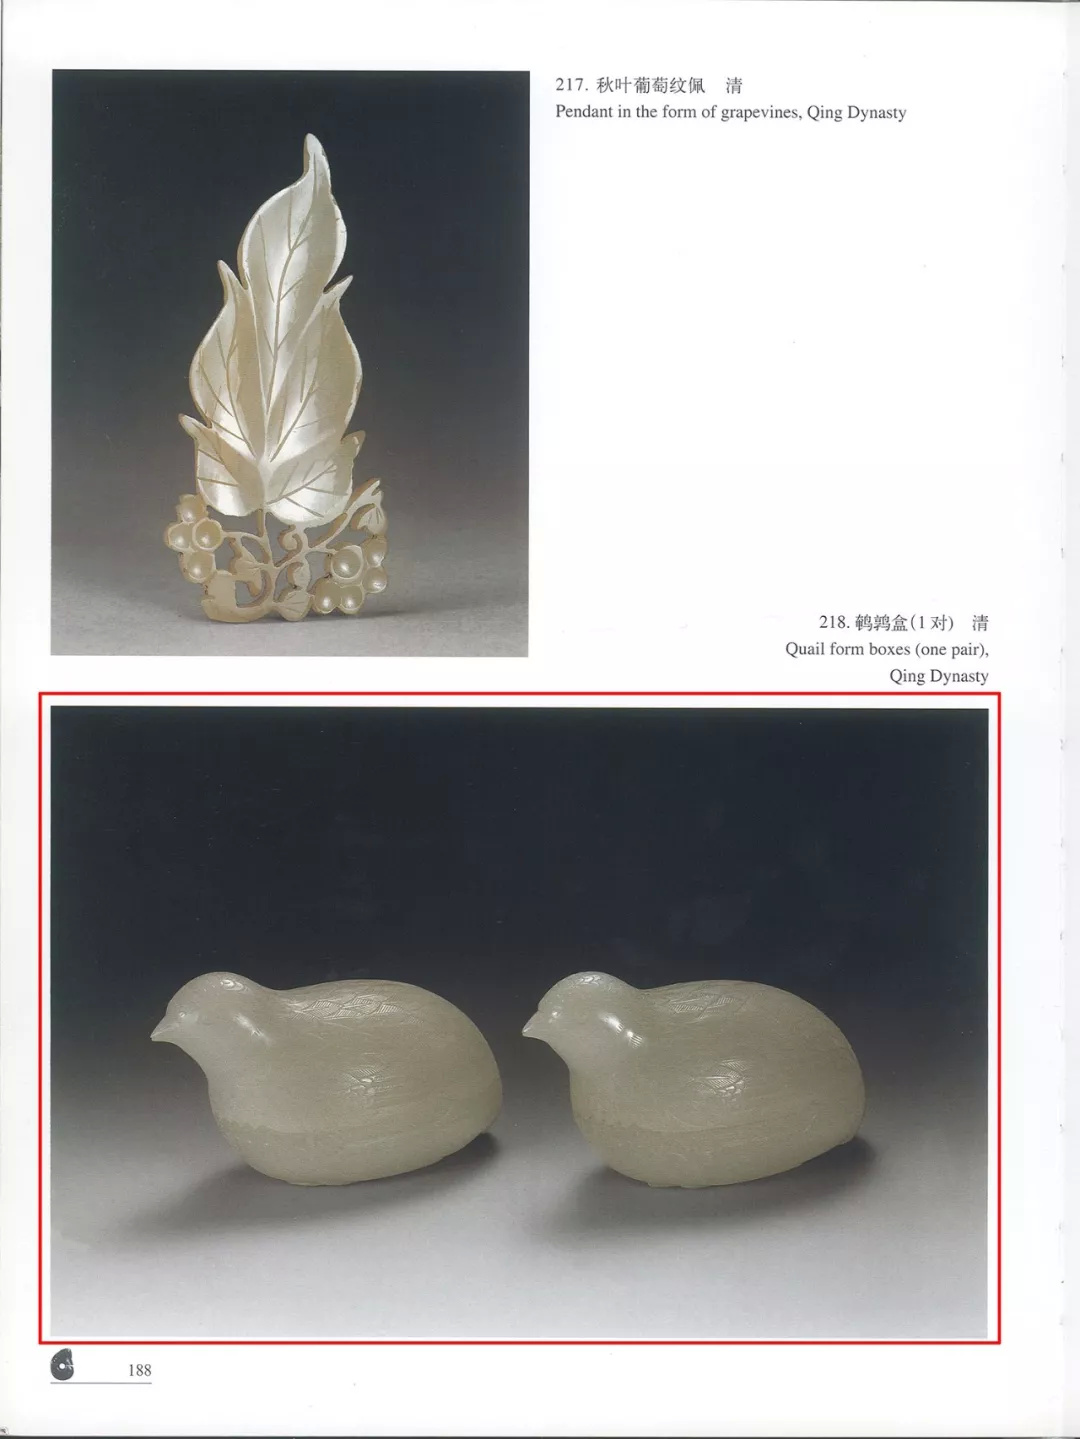 清代宫廷玉器：古玉雕艺术的高峰| 世界珠宝玉石学院培训中心